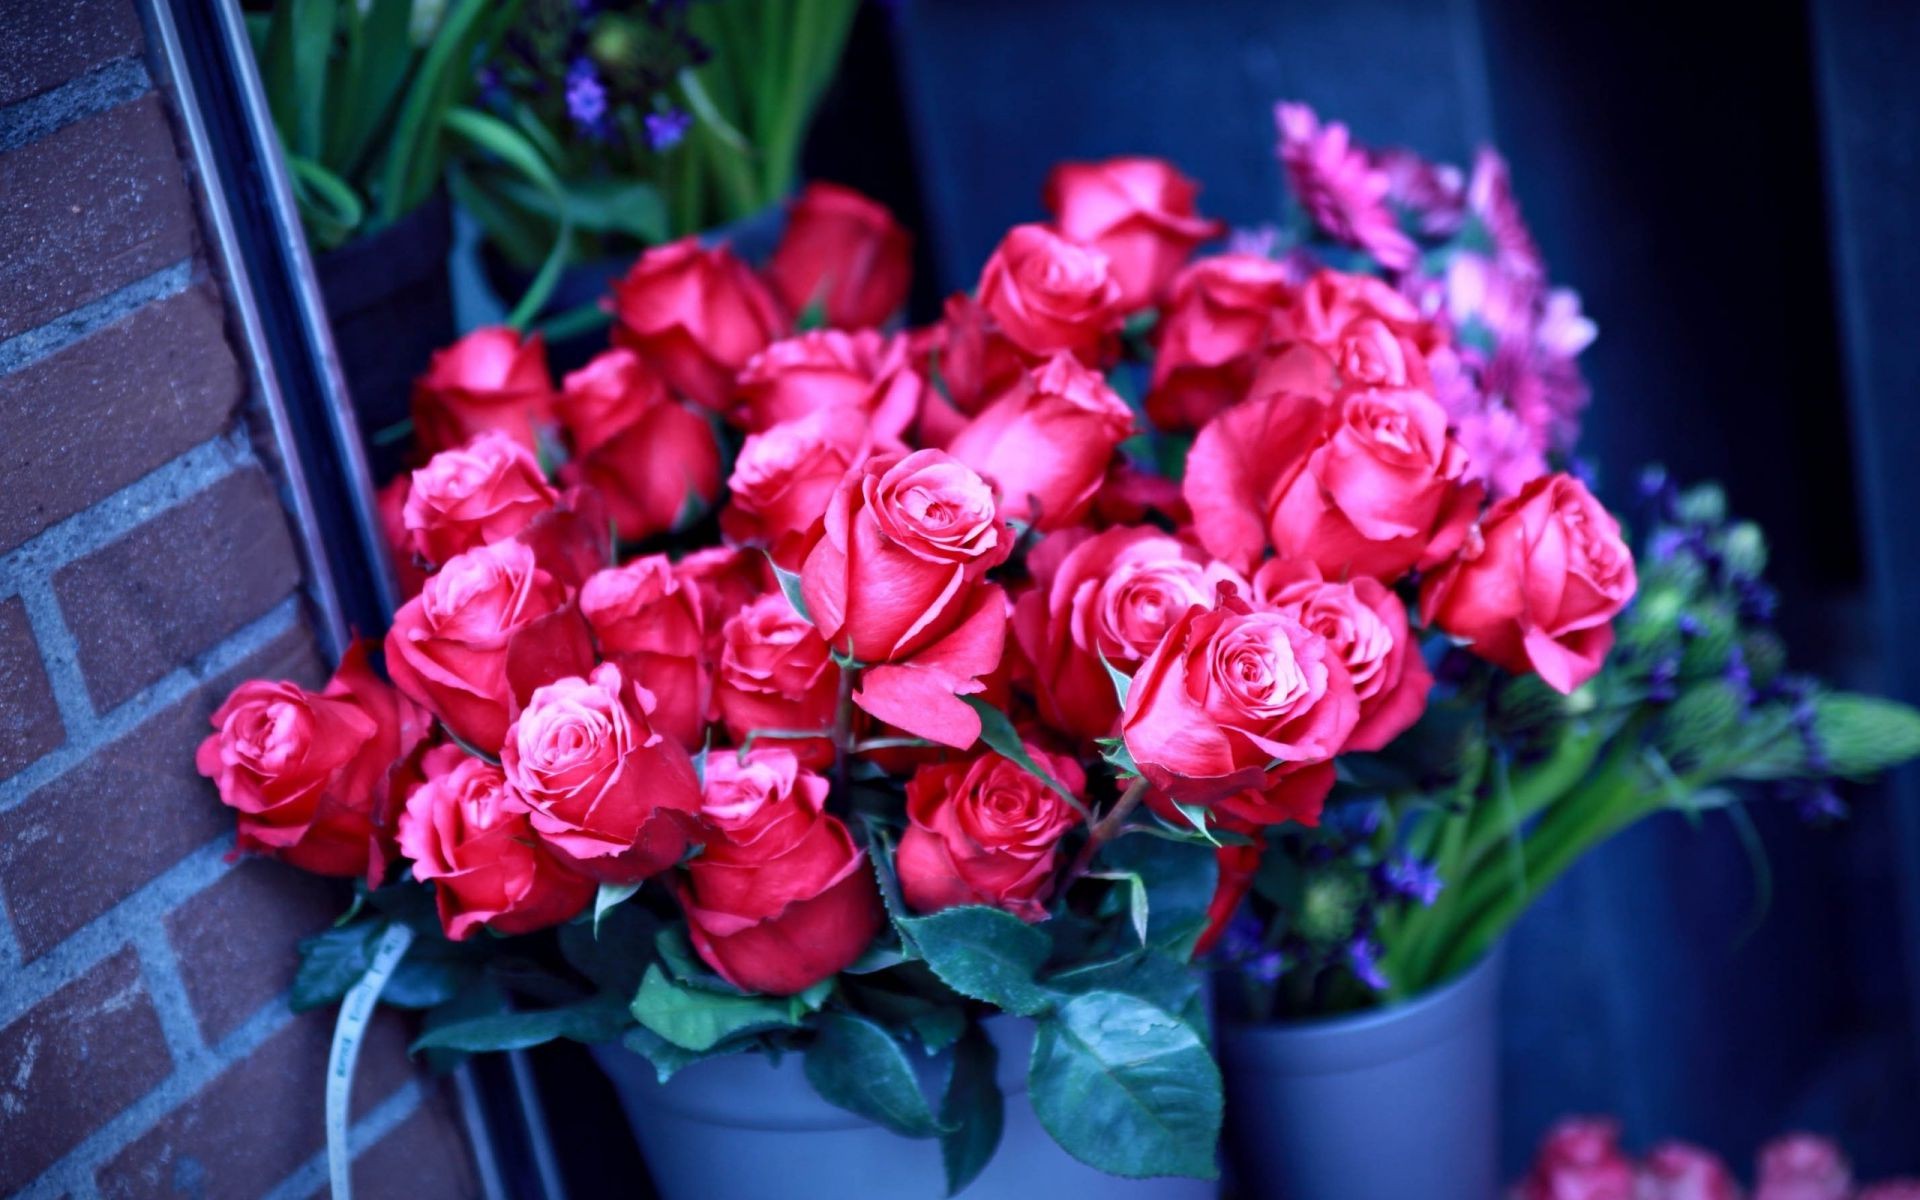 розы букет цветок цветочные подарок романтический лепесток любовь романтика флора блюминг украшения праздник расположение свадьба кластер сад природа флорист цвет